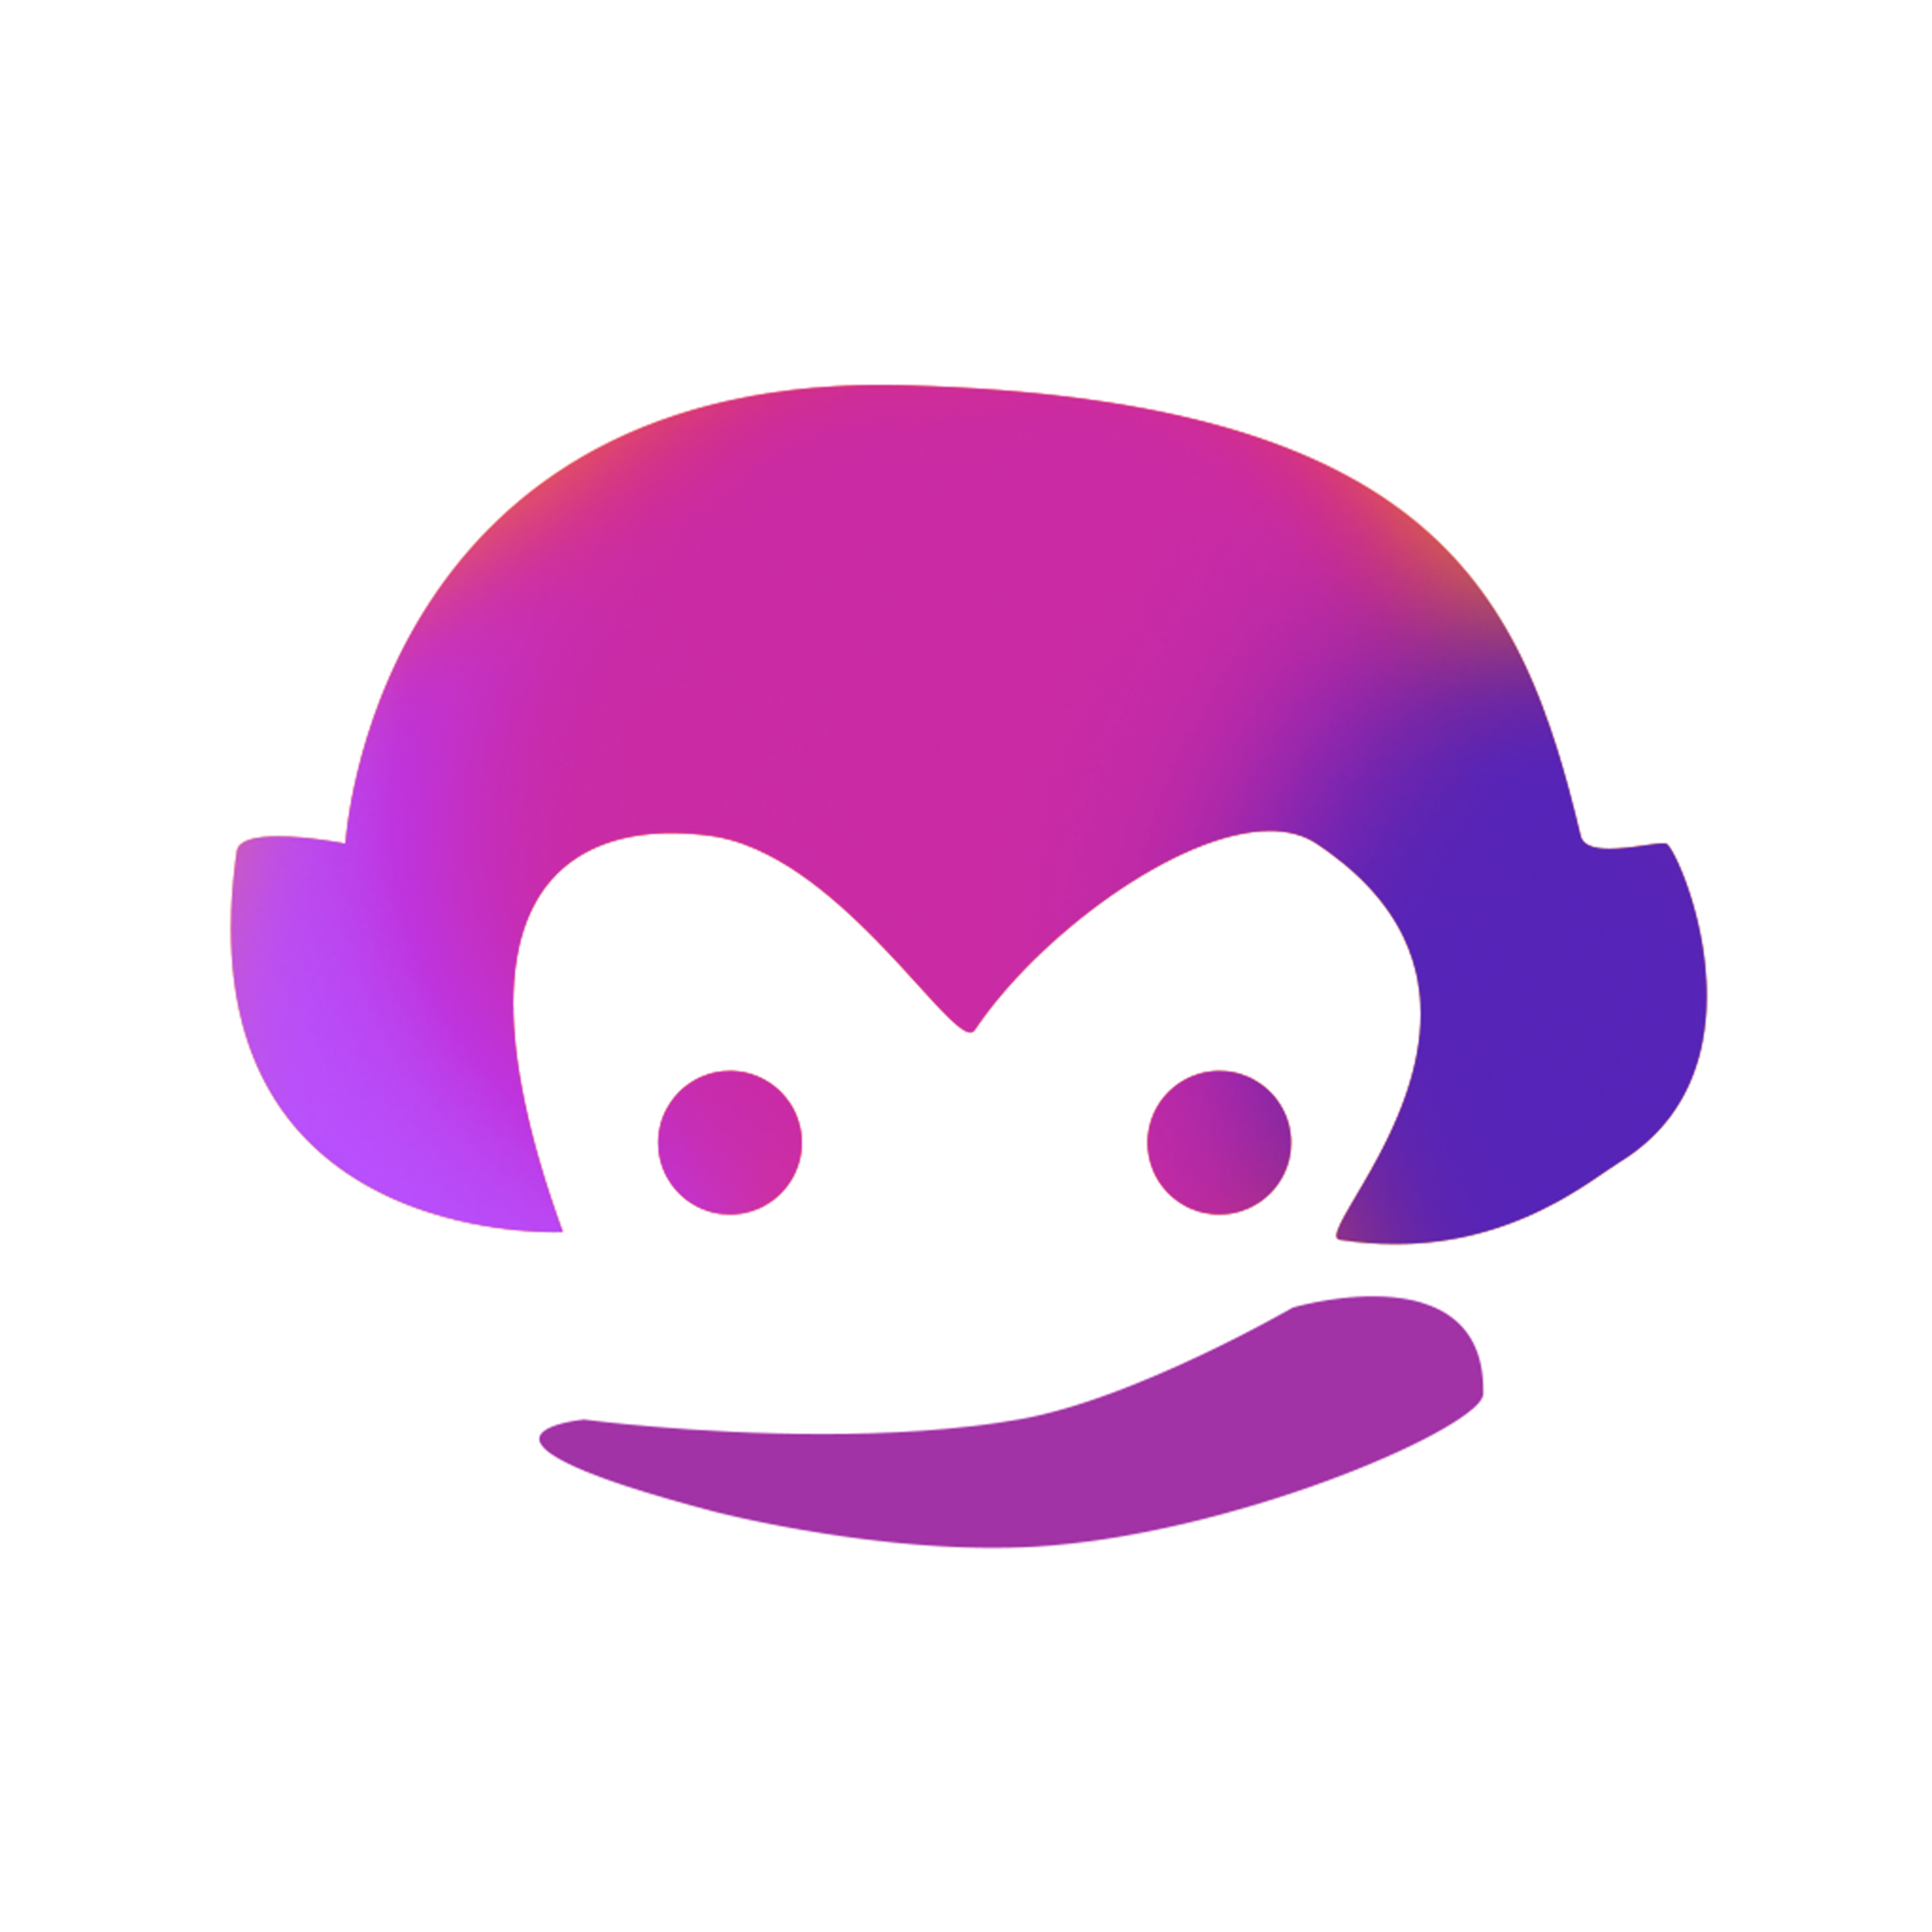 皮皮猴直播 V2.3.5 破解版